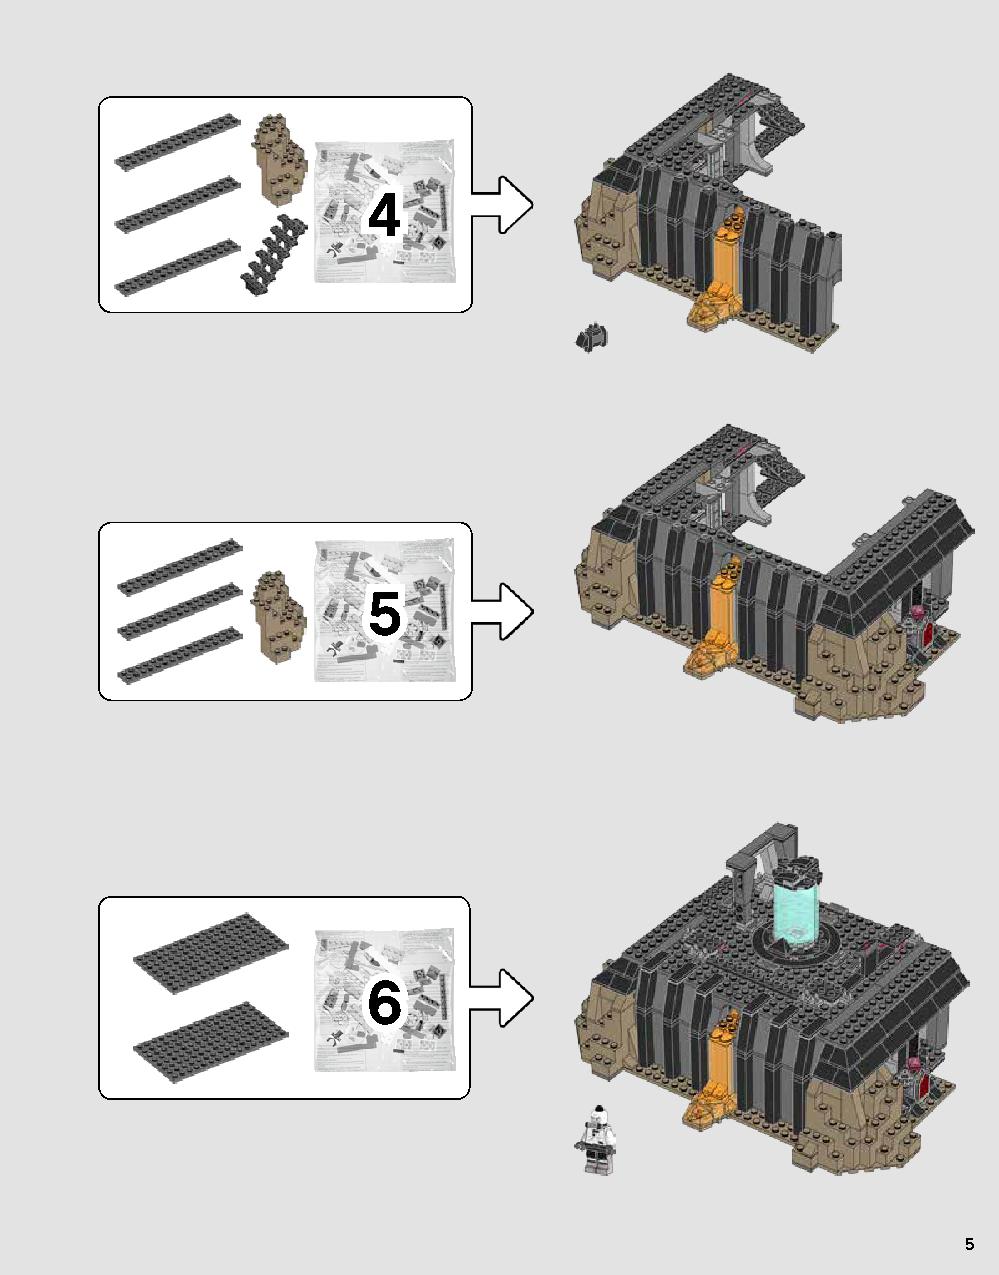 ダース・ベイダーの城 75251 レゴの商品情報 レゴの説明書・組立方法 5 page